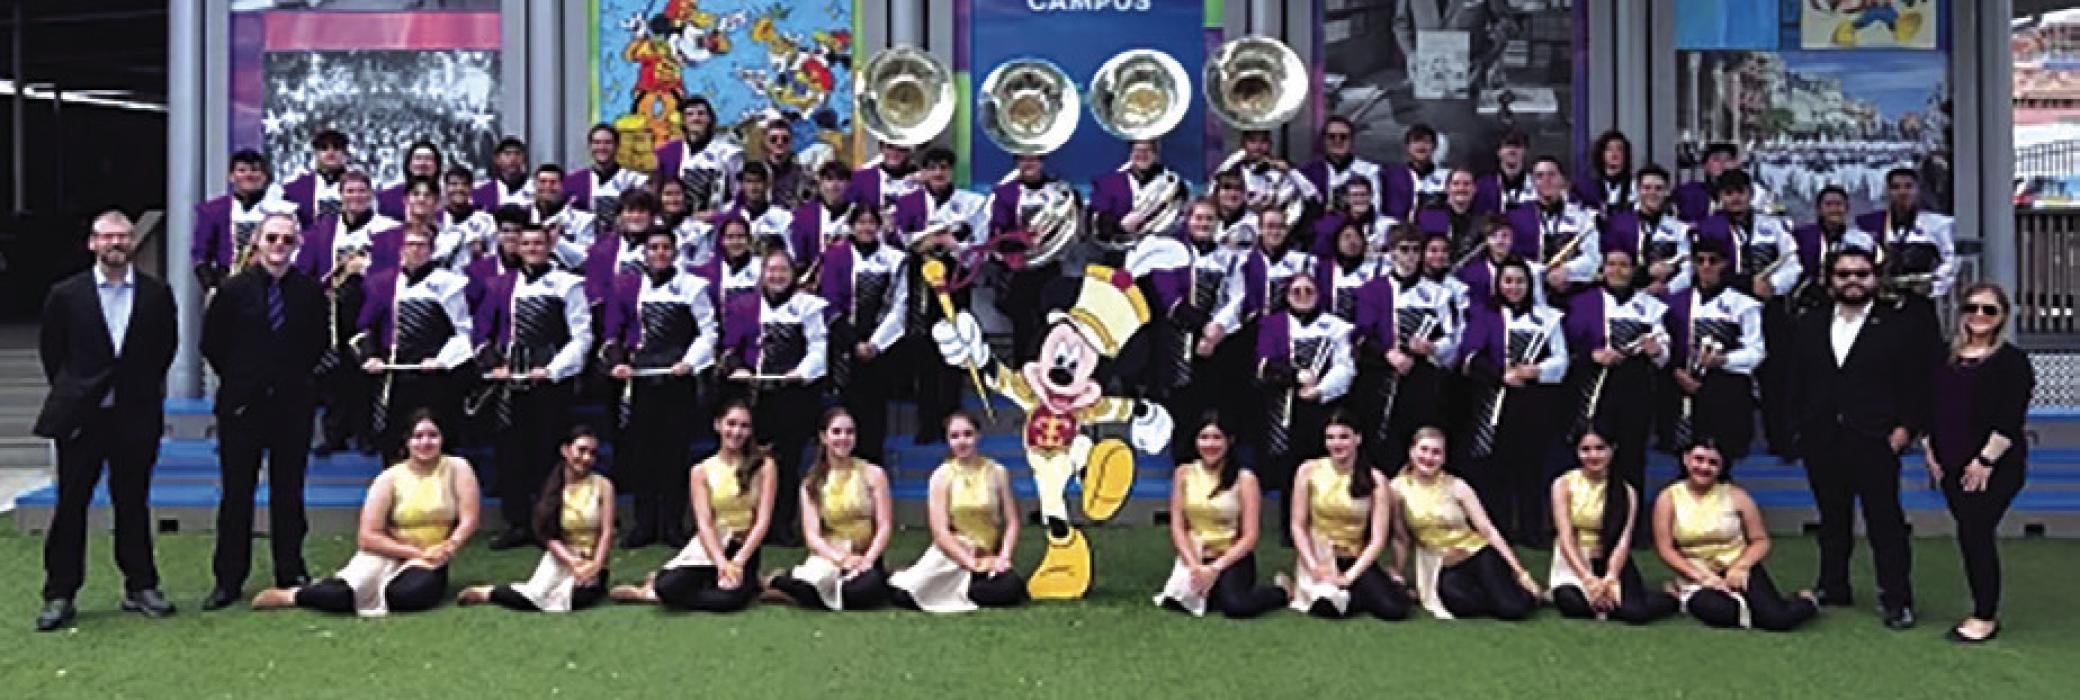 LG Band Marches At Disney World